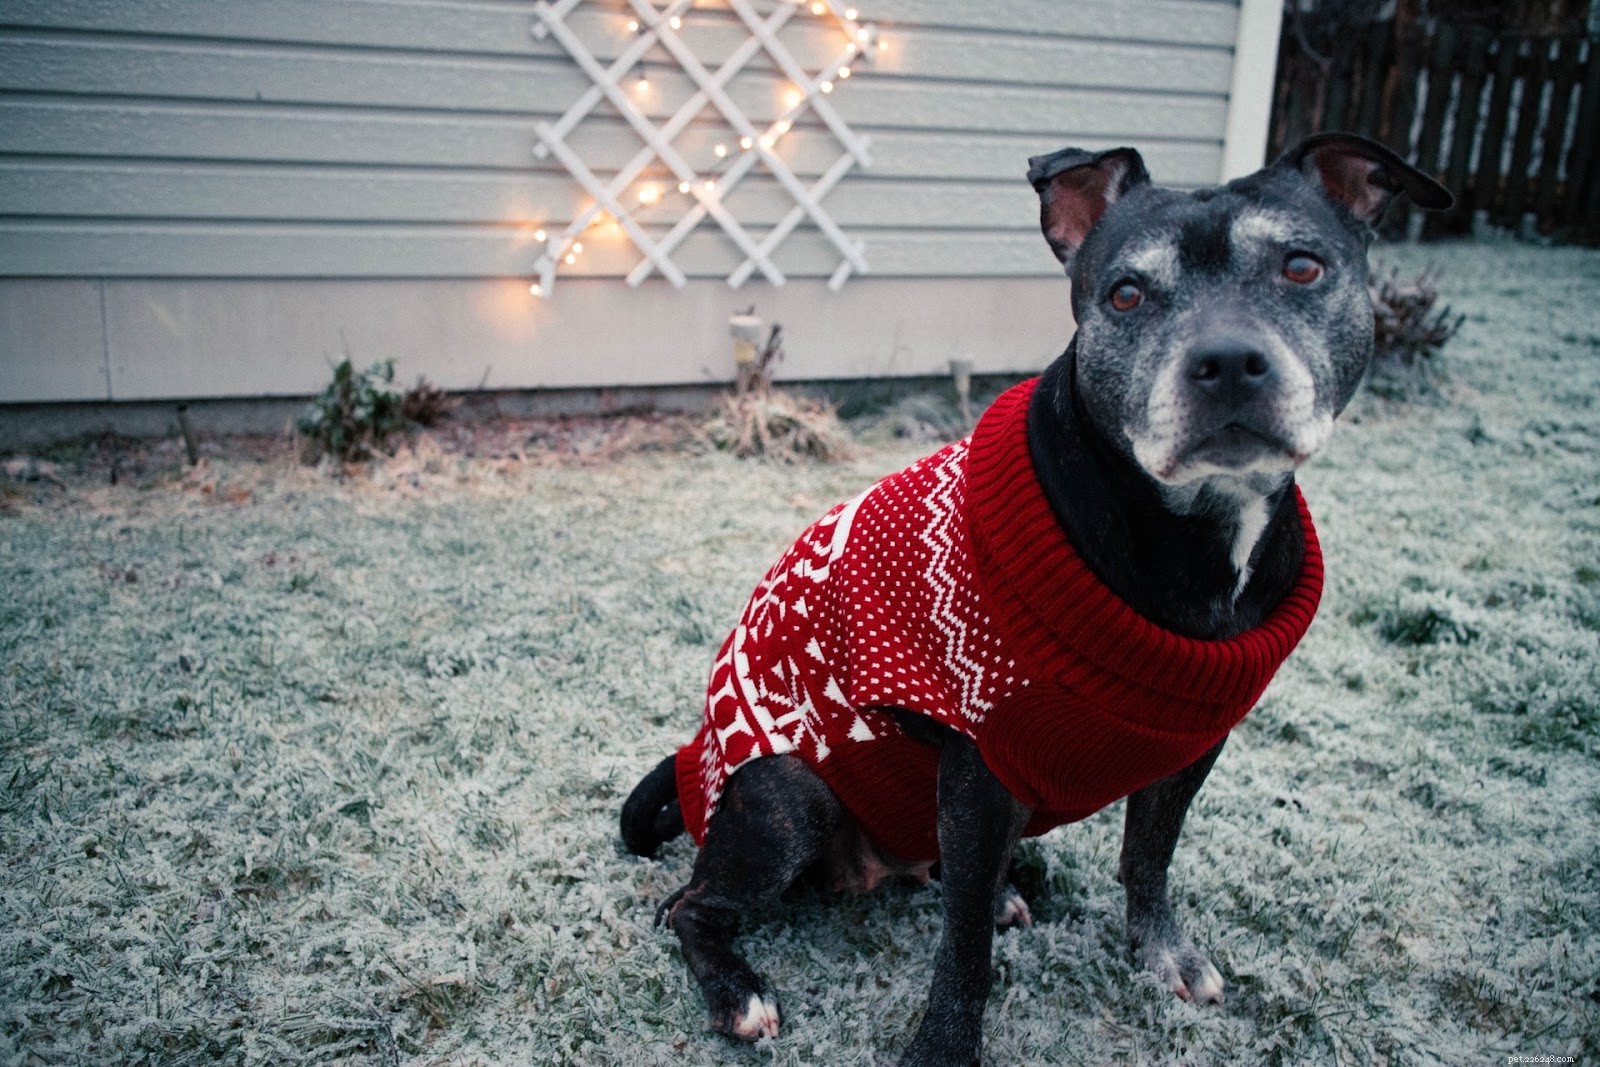 우리 강아지에게 스웨터가 필요합니까? 언제 + 겨울 날씨에 강아지 옷을 입히는 방법